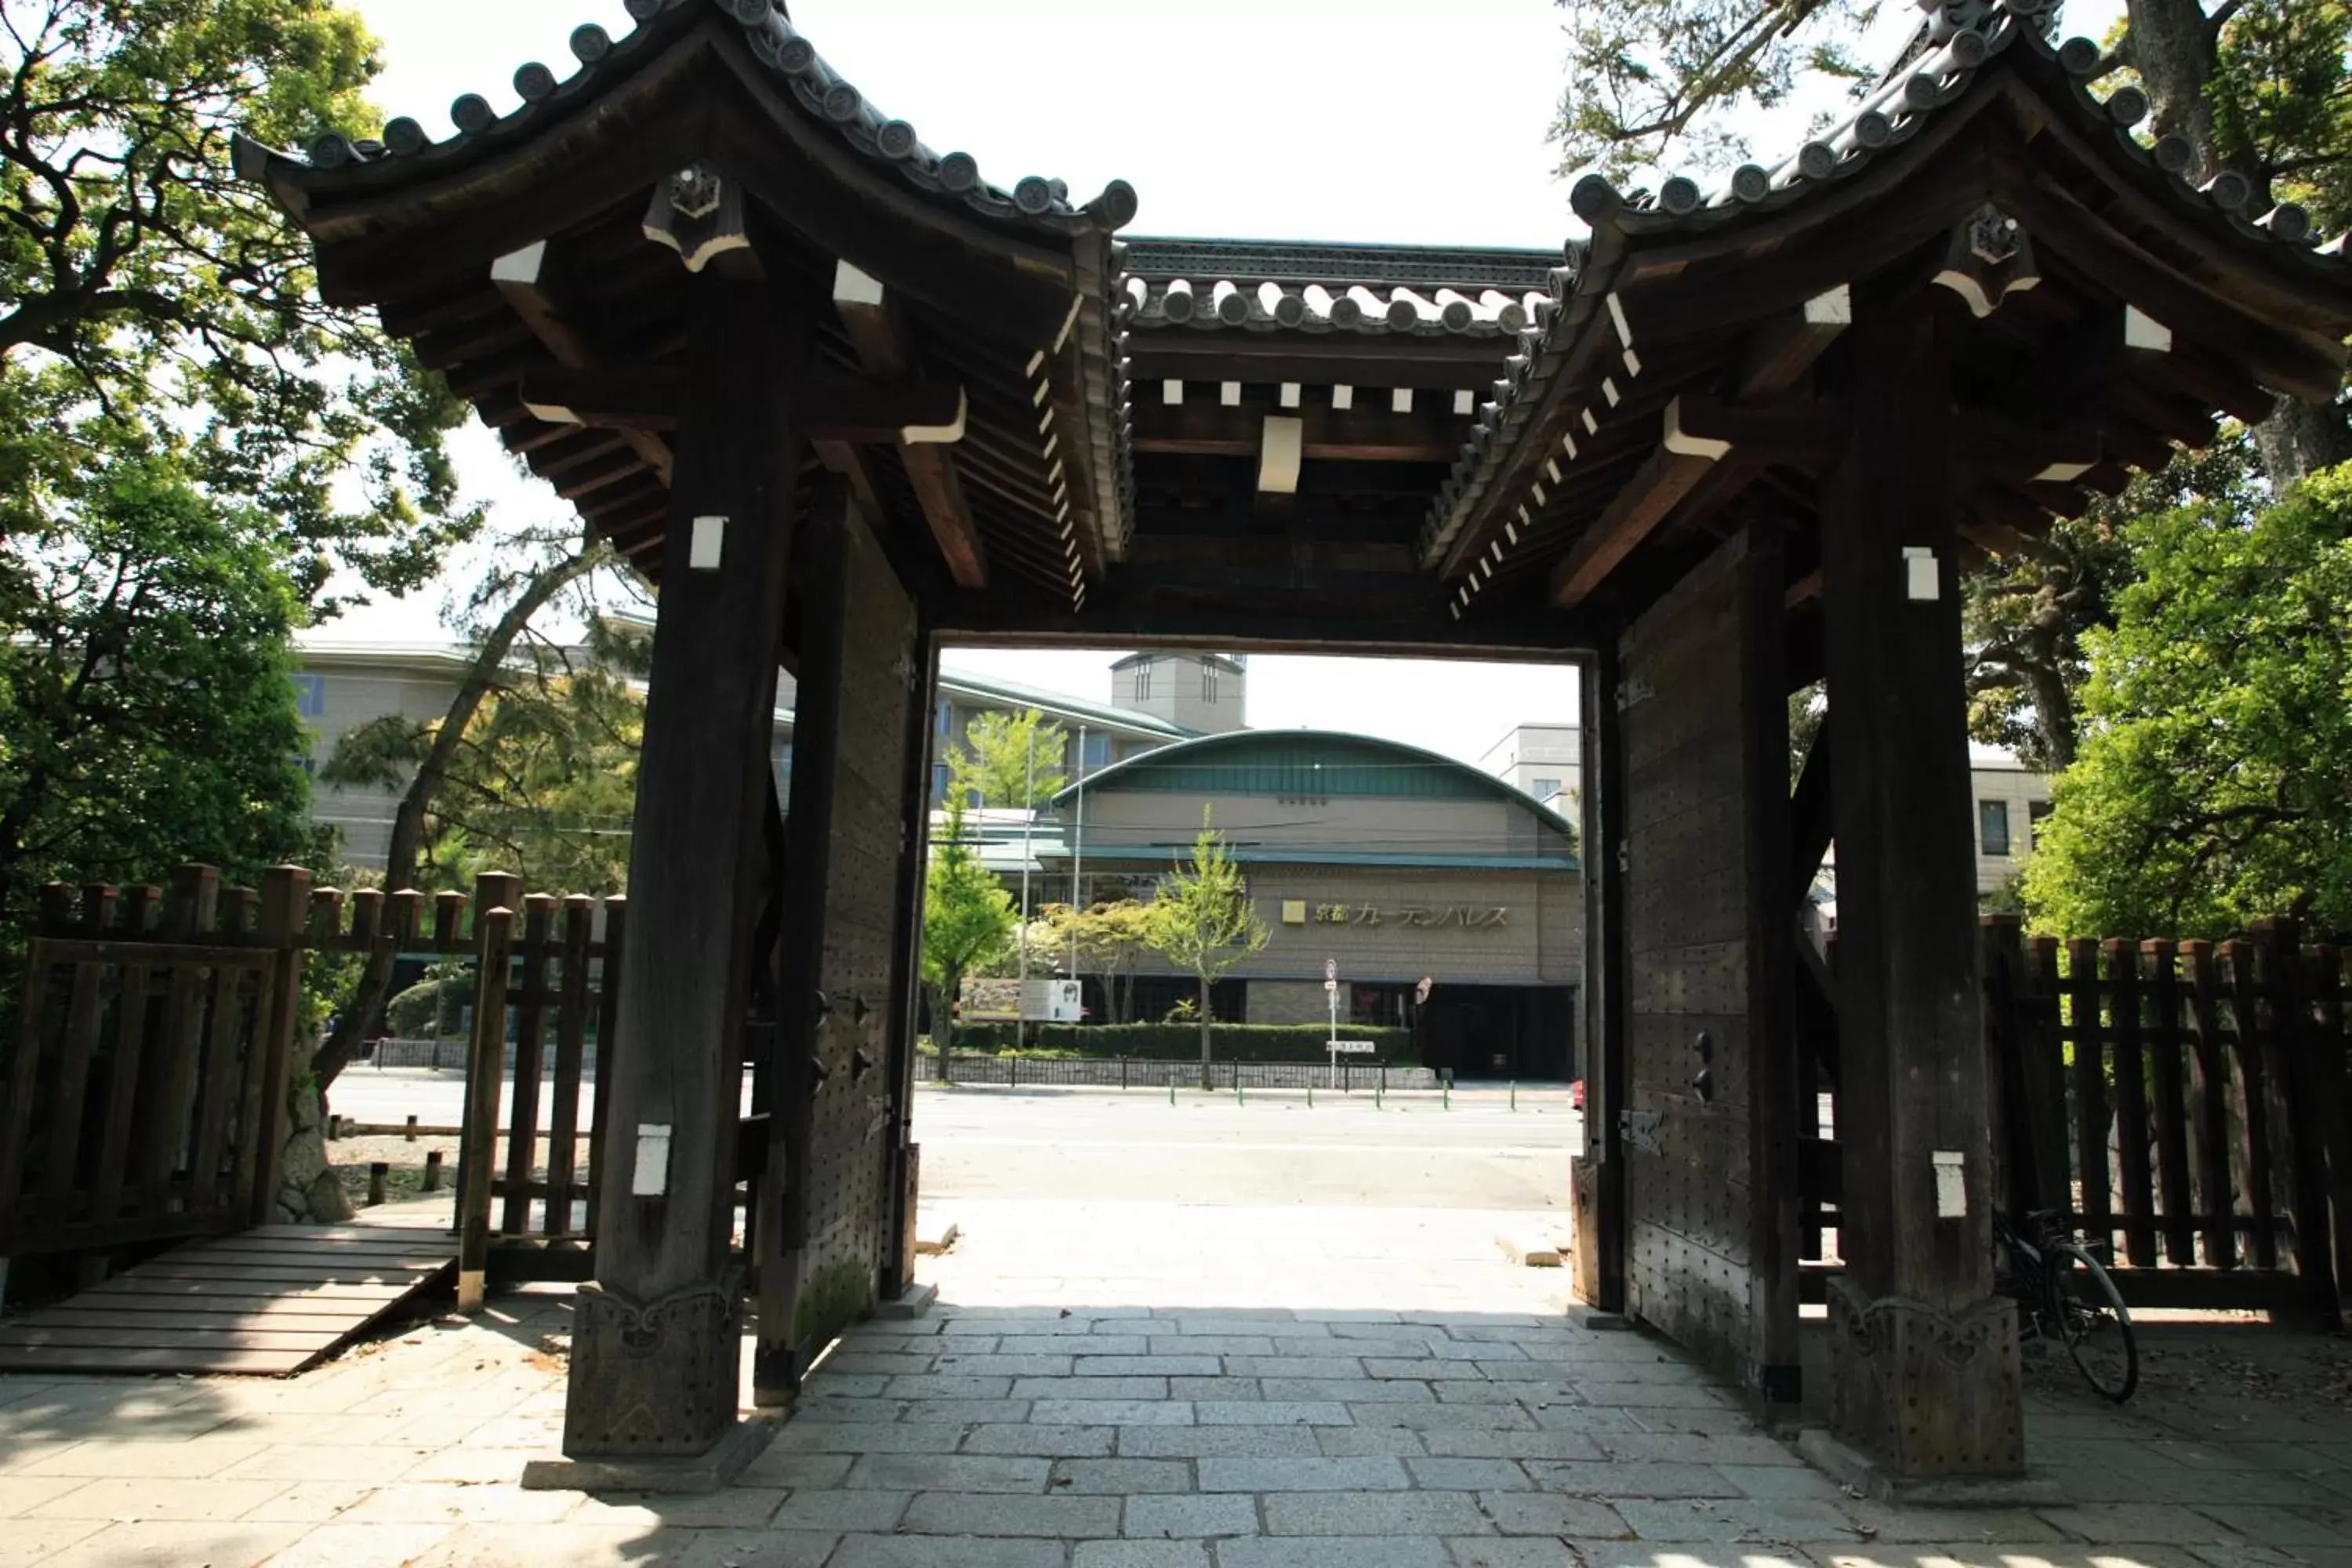 Property building, Facade/Entrance in Kyoto Garden Palace